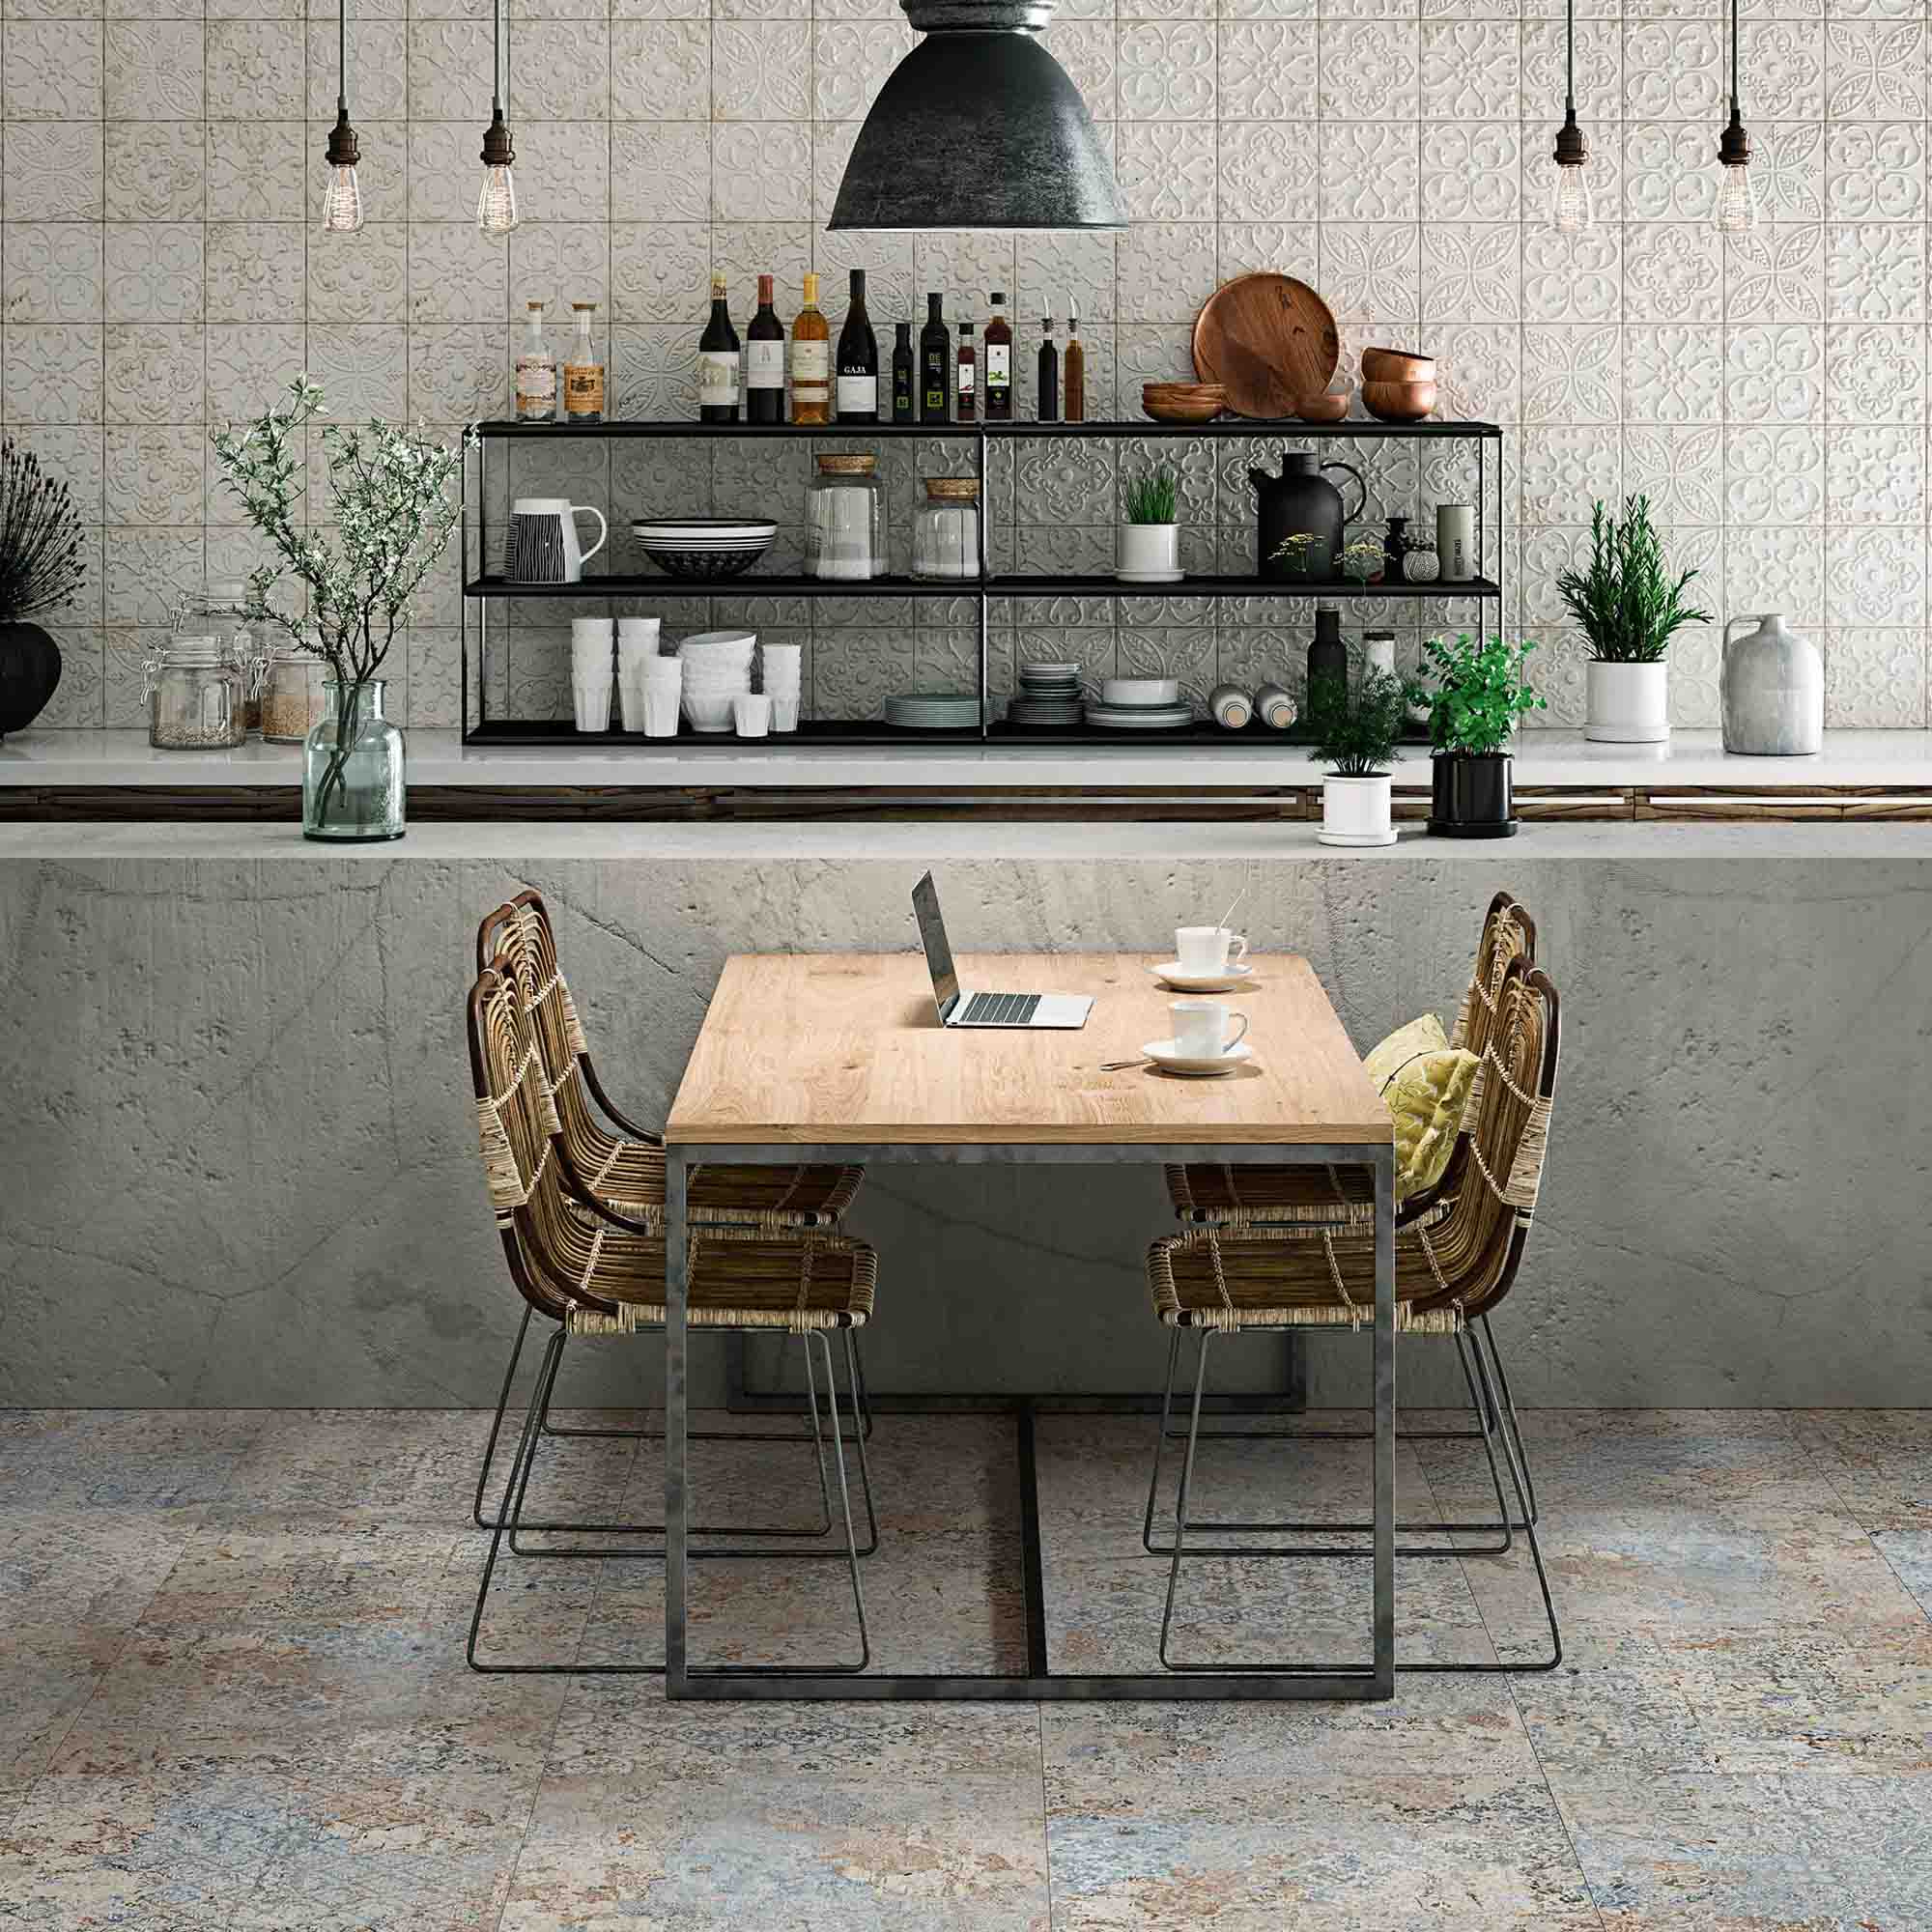 Kuchnia w stylu rustykalnym wyłożona płytkami Carpet imitującymi stary dywan z drewnianym stołem, krzesłami i naczyniami